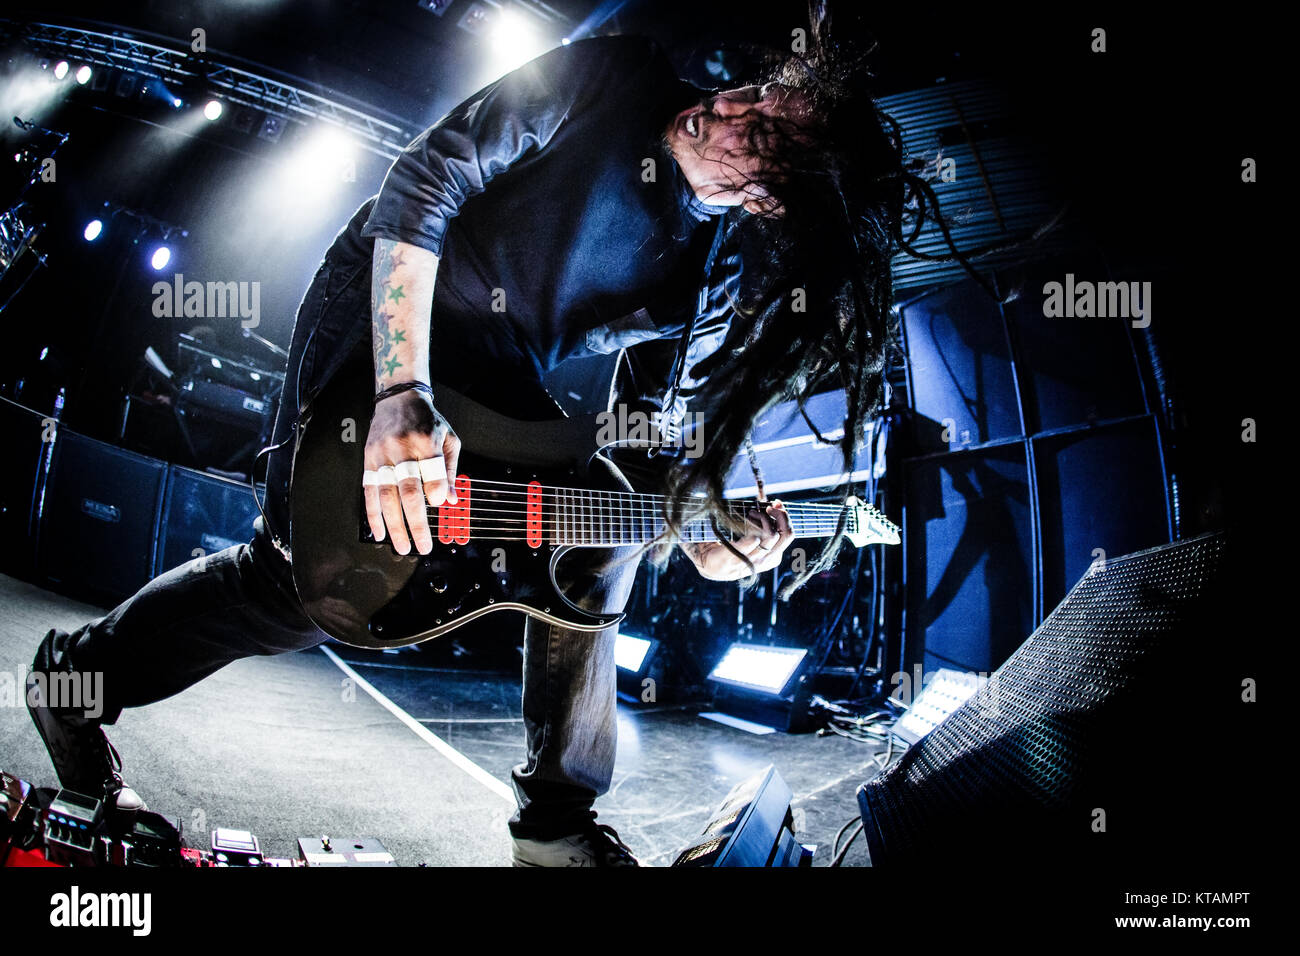 Die amerikanische nu metal band Korn führt ein Live Konzert in den Amager Bio in Kopenhagen. Hier Gitarrist James Shaffer ist live auf der Bühne gesehen. Dänemark, 08.05.2014. Stockfoto